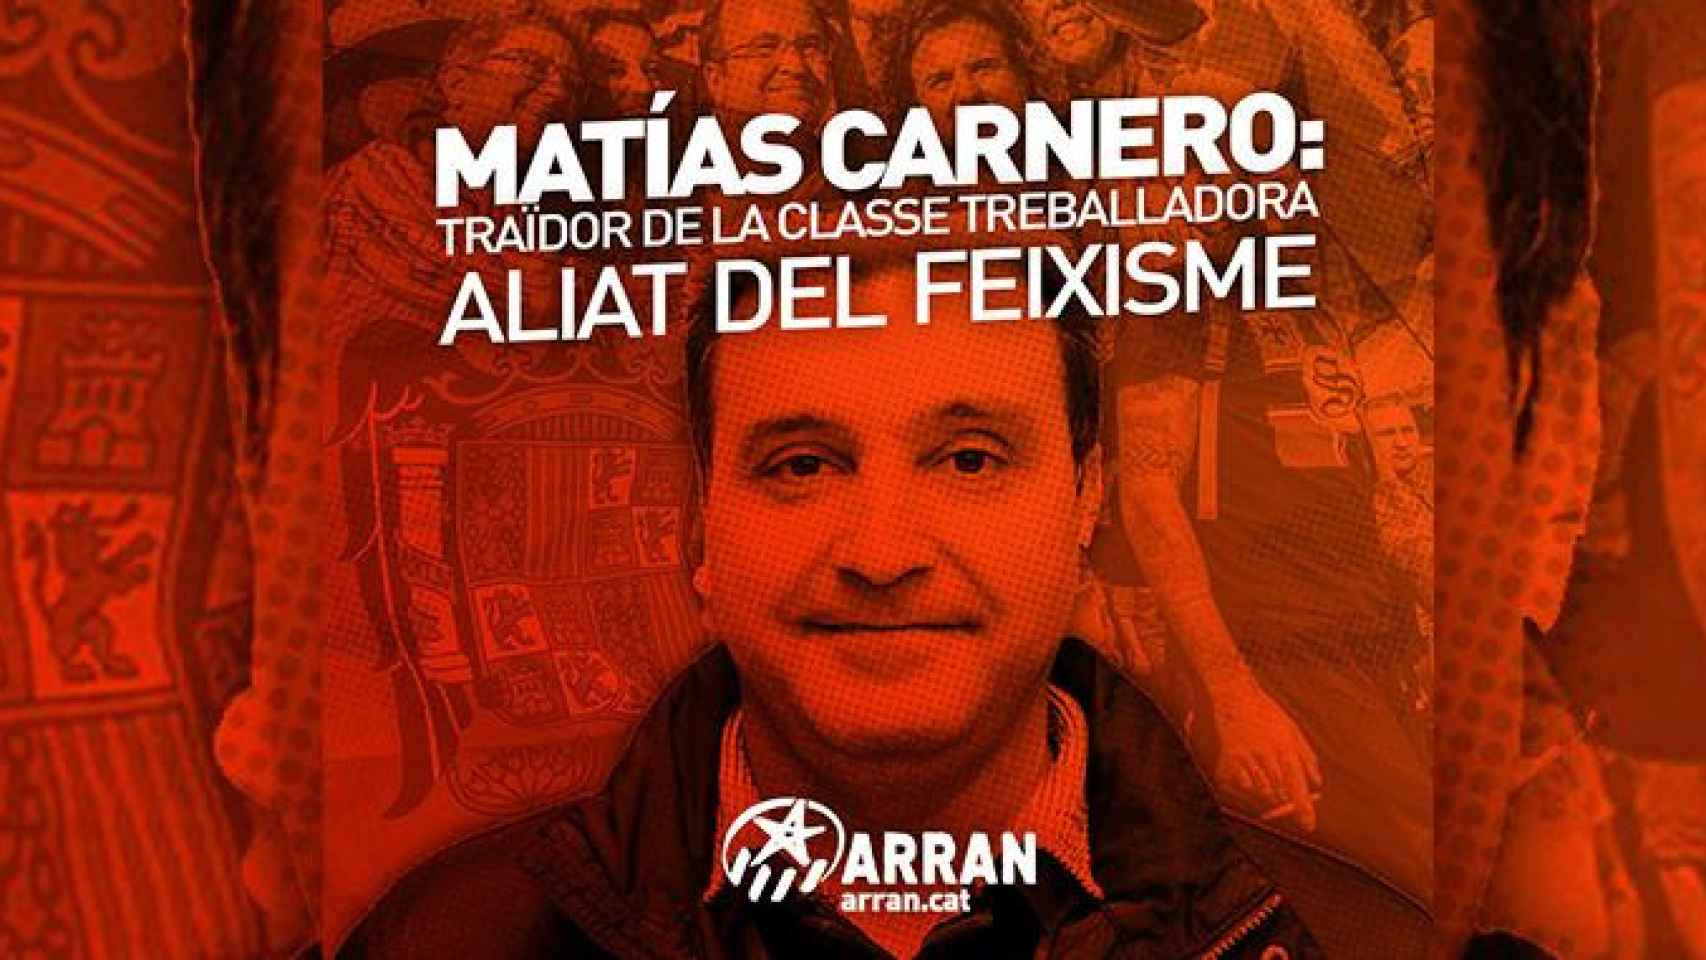 El presidente de UGT Cataluña, Matías Carnero, señalado por Arran